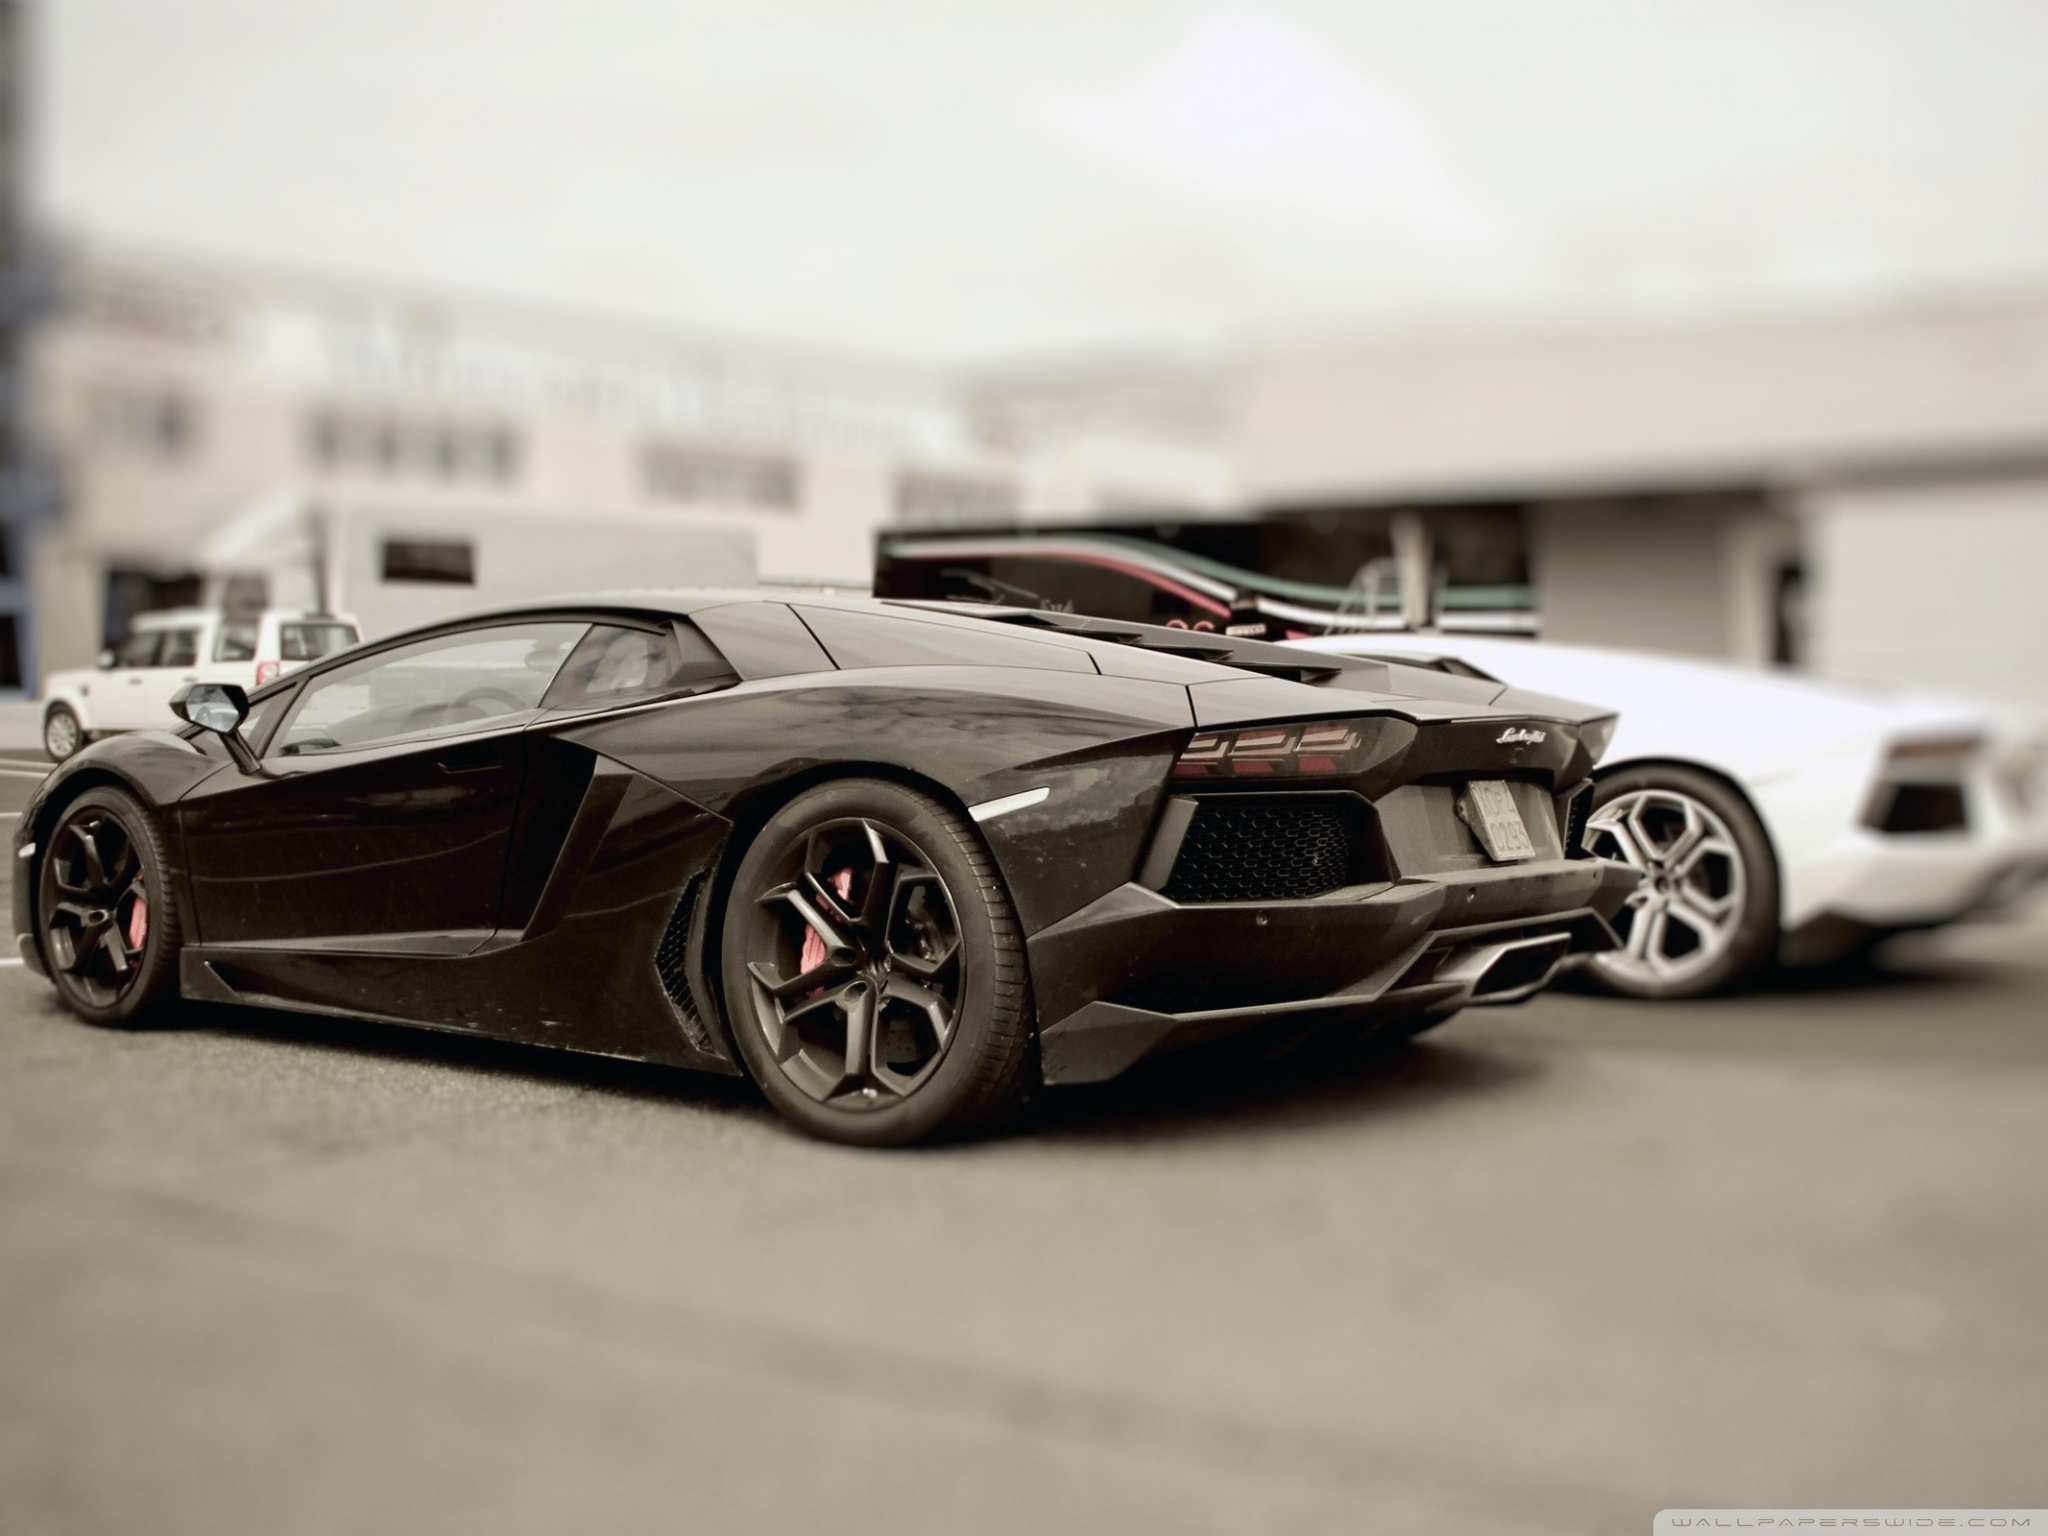 Standard - Lamborghini Aventador Pics Hd , HD Wallpaper & Backgrounds